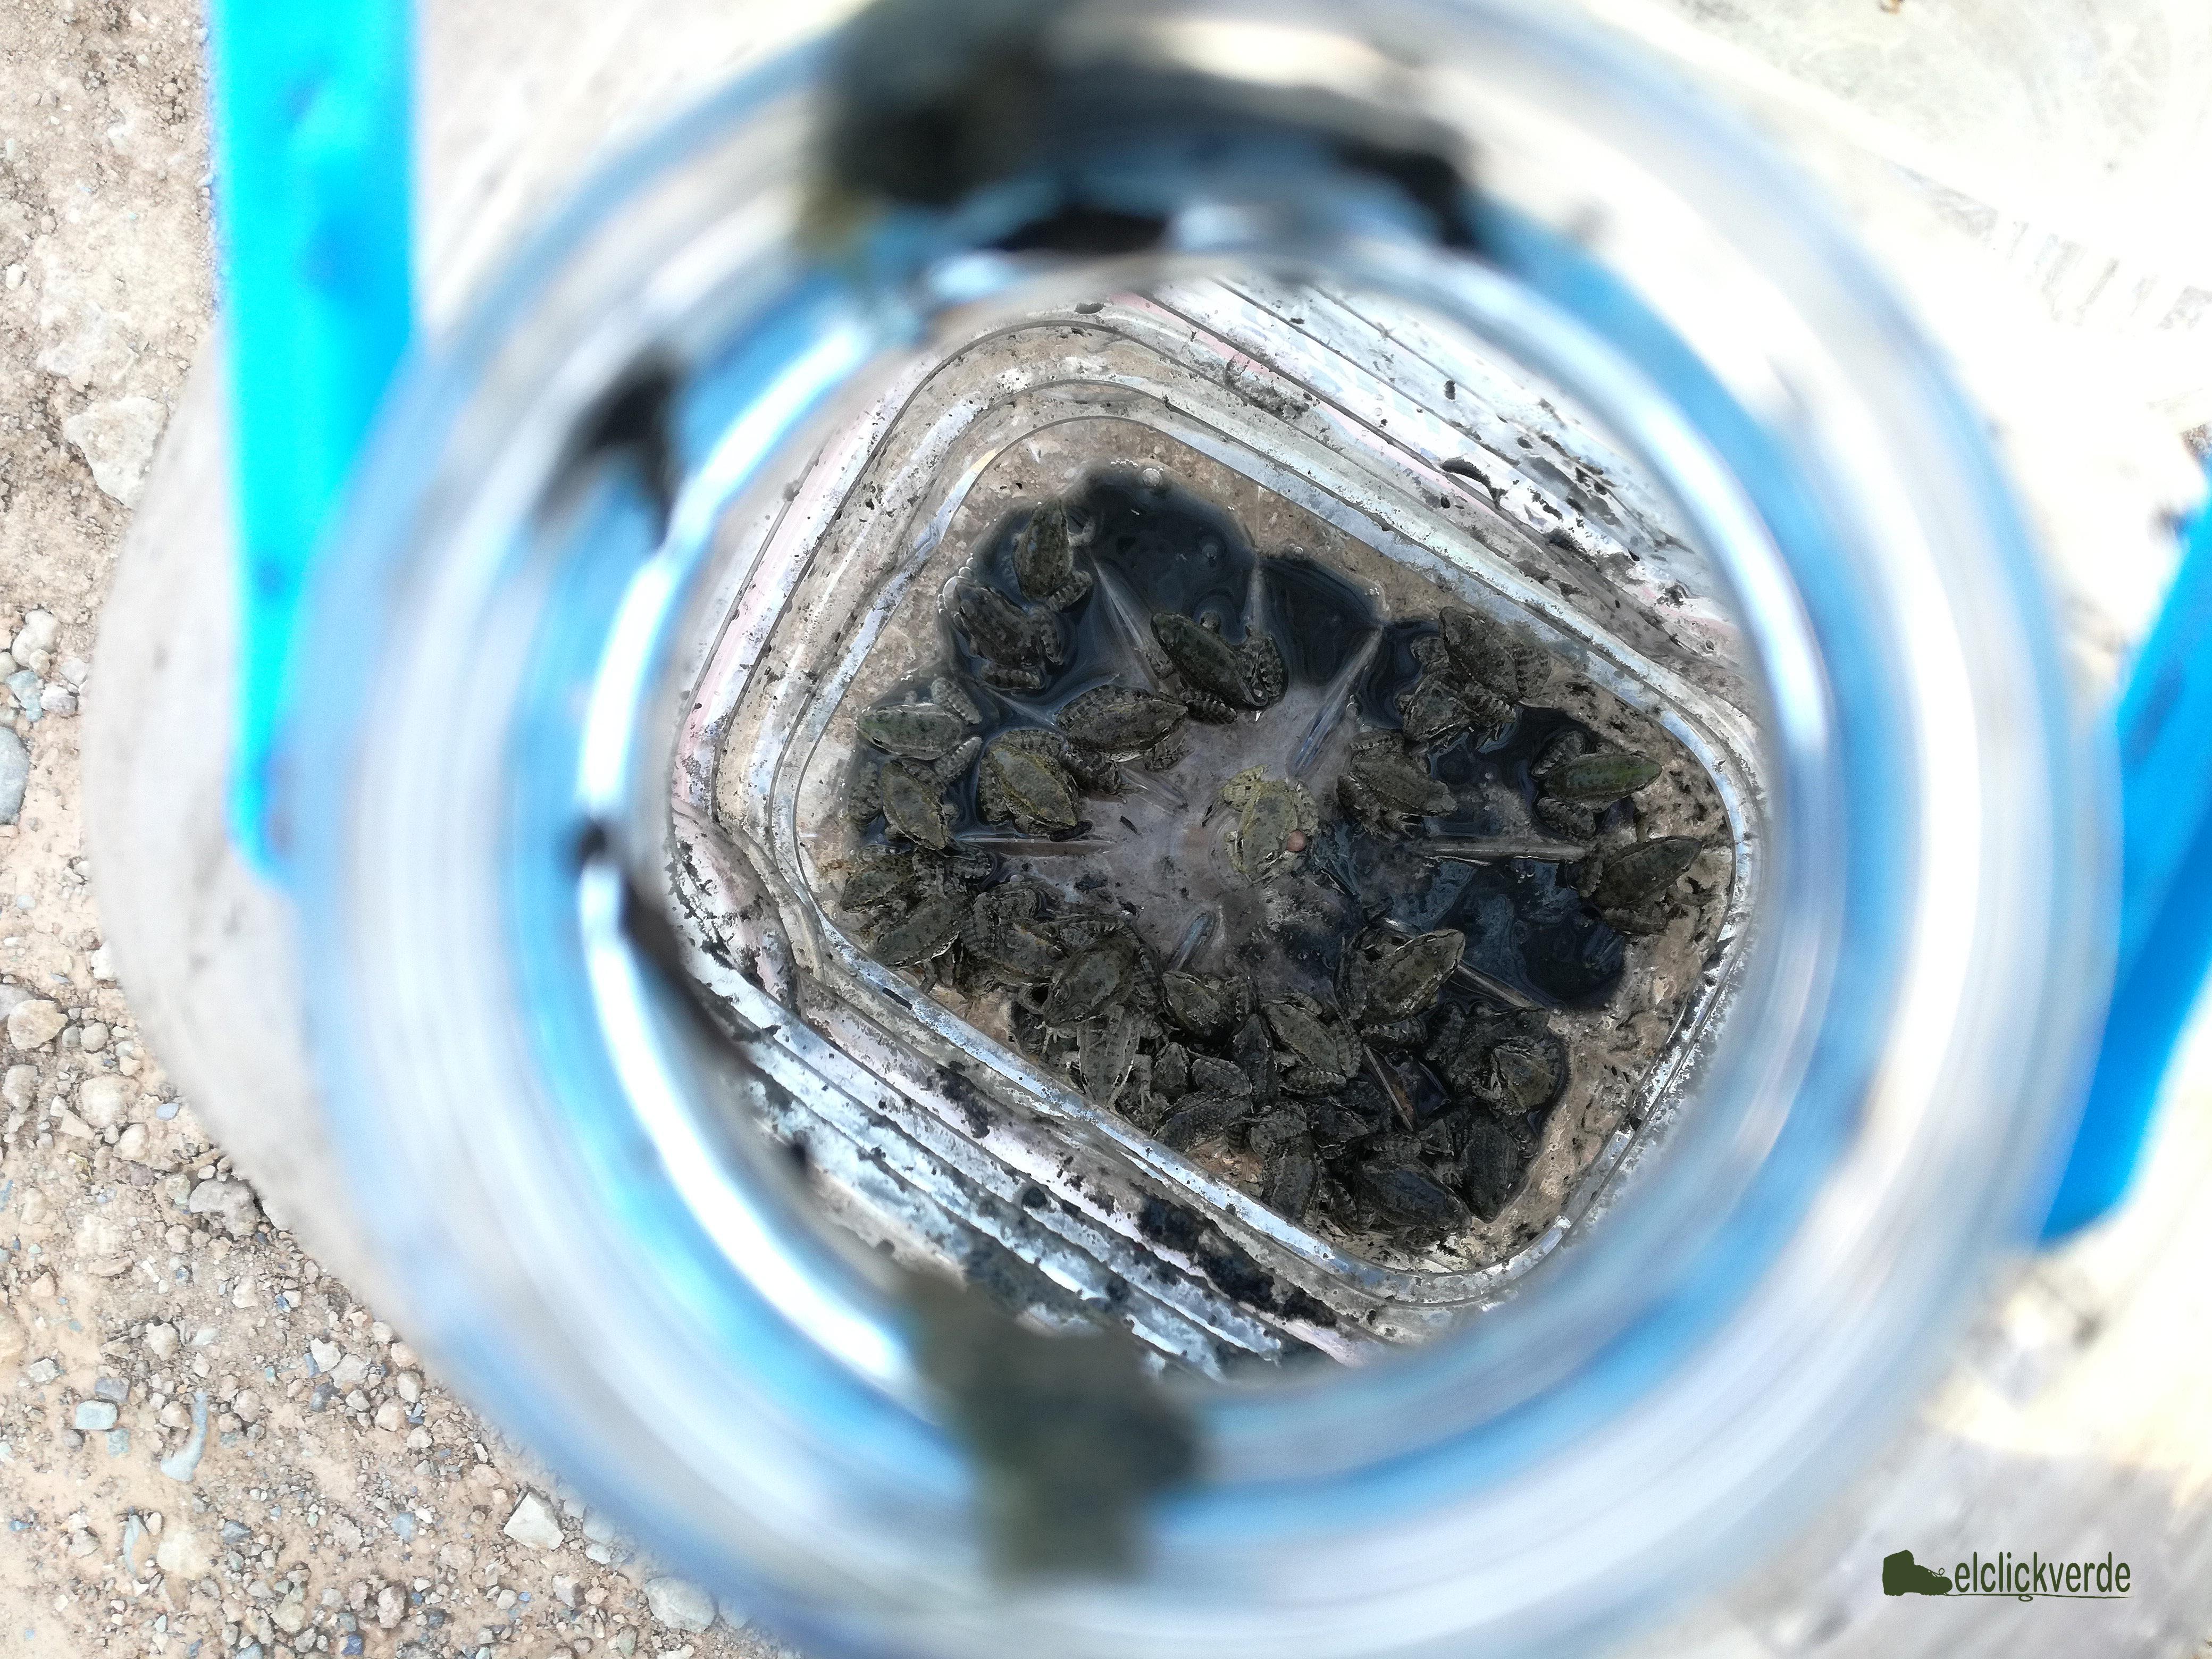 Una de las garrafas, con ranas comunes ('Pelophylax perezi') y sapos corredores ('Epidalea calamita'). El ejemplar del centro muestra una malformación.